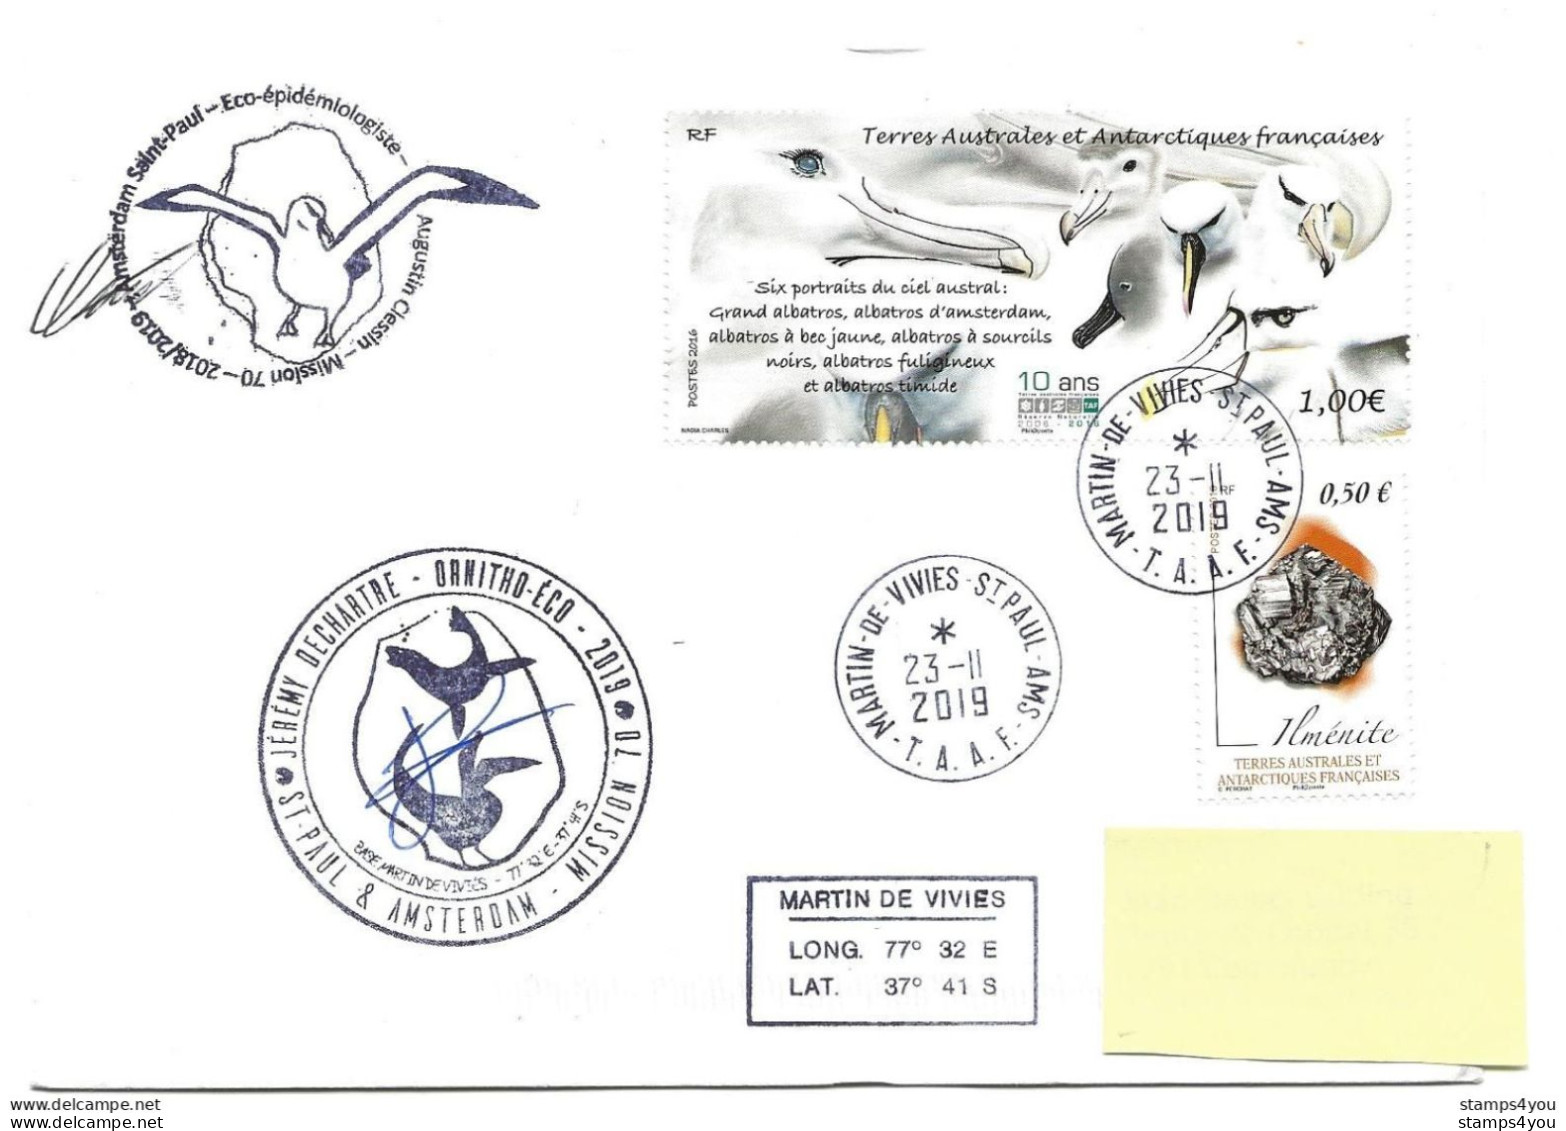 440 - 32 - Enveloppe TAAF Base Martin-de-Vivies - Cachets Illustrés Mission 70 - 2019 - Bases Antarctiques